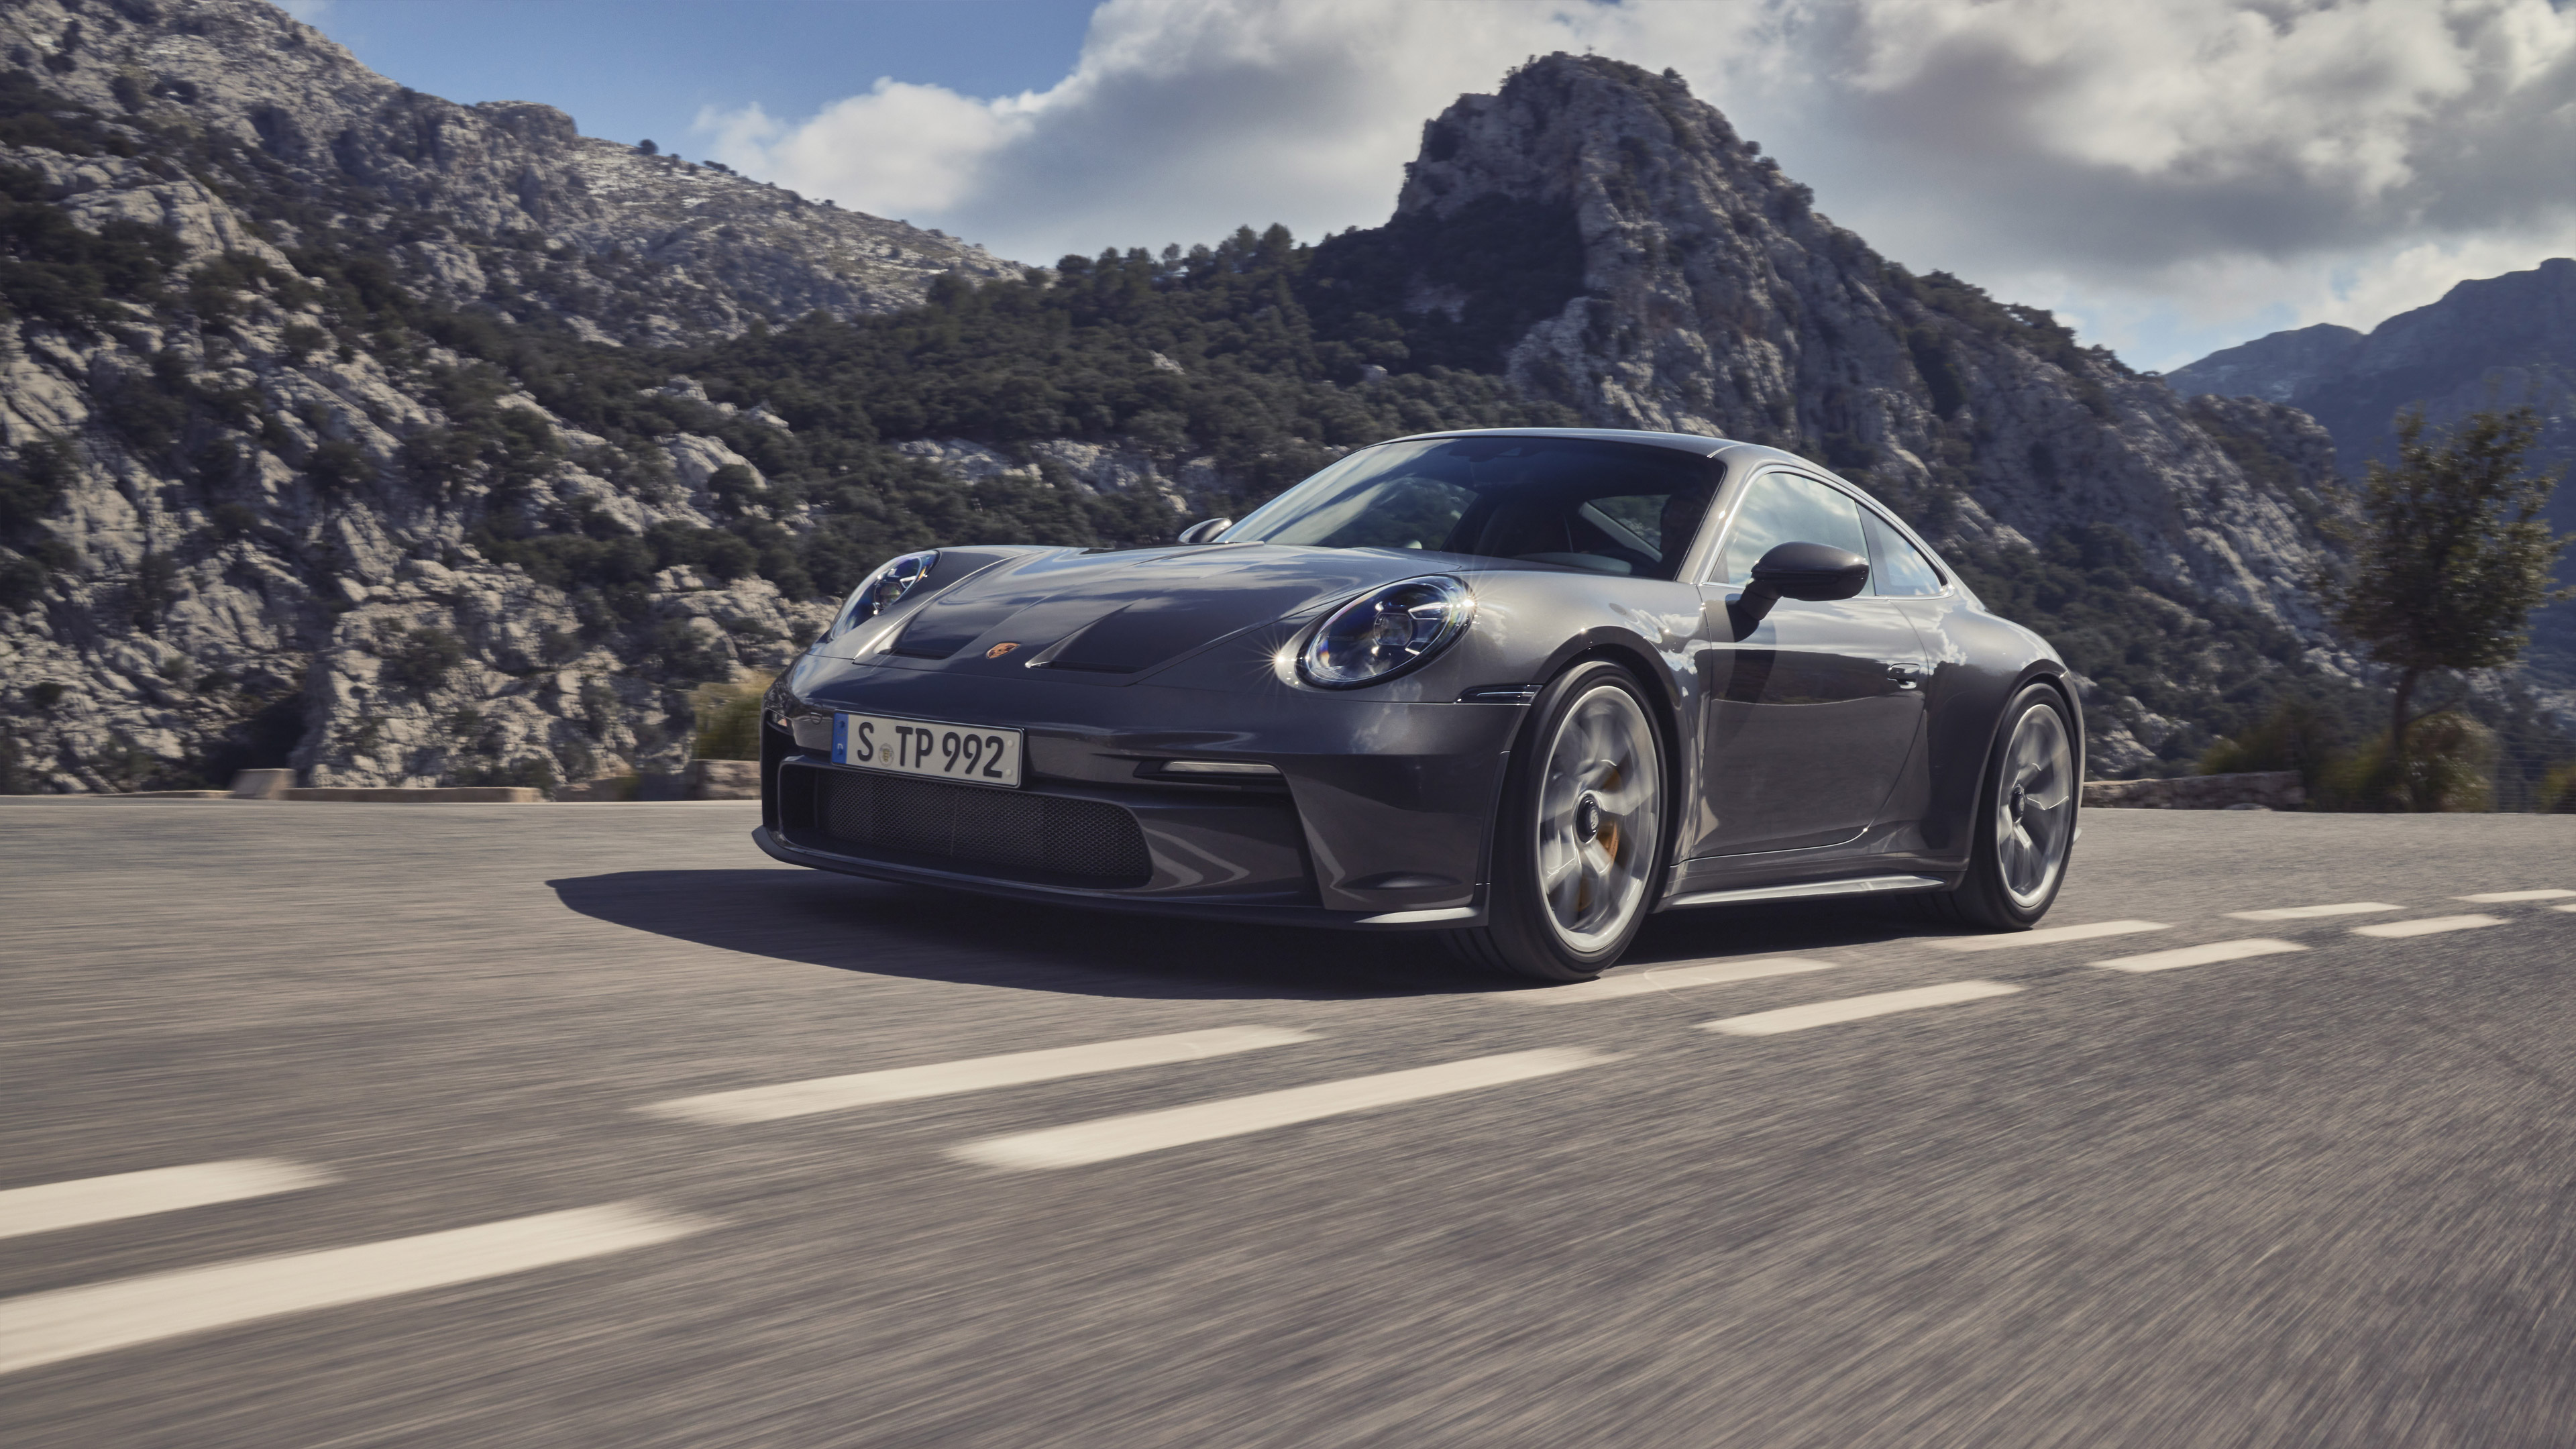 Download mobile wallpaper Porsche, Car, Porsche 911, Porsche 911 Gt3, Vehicles, Silver Car for free.